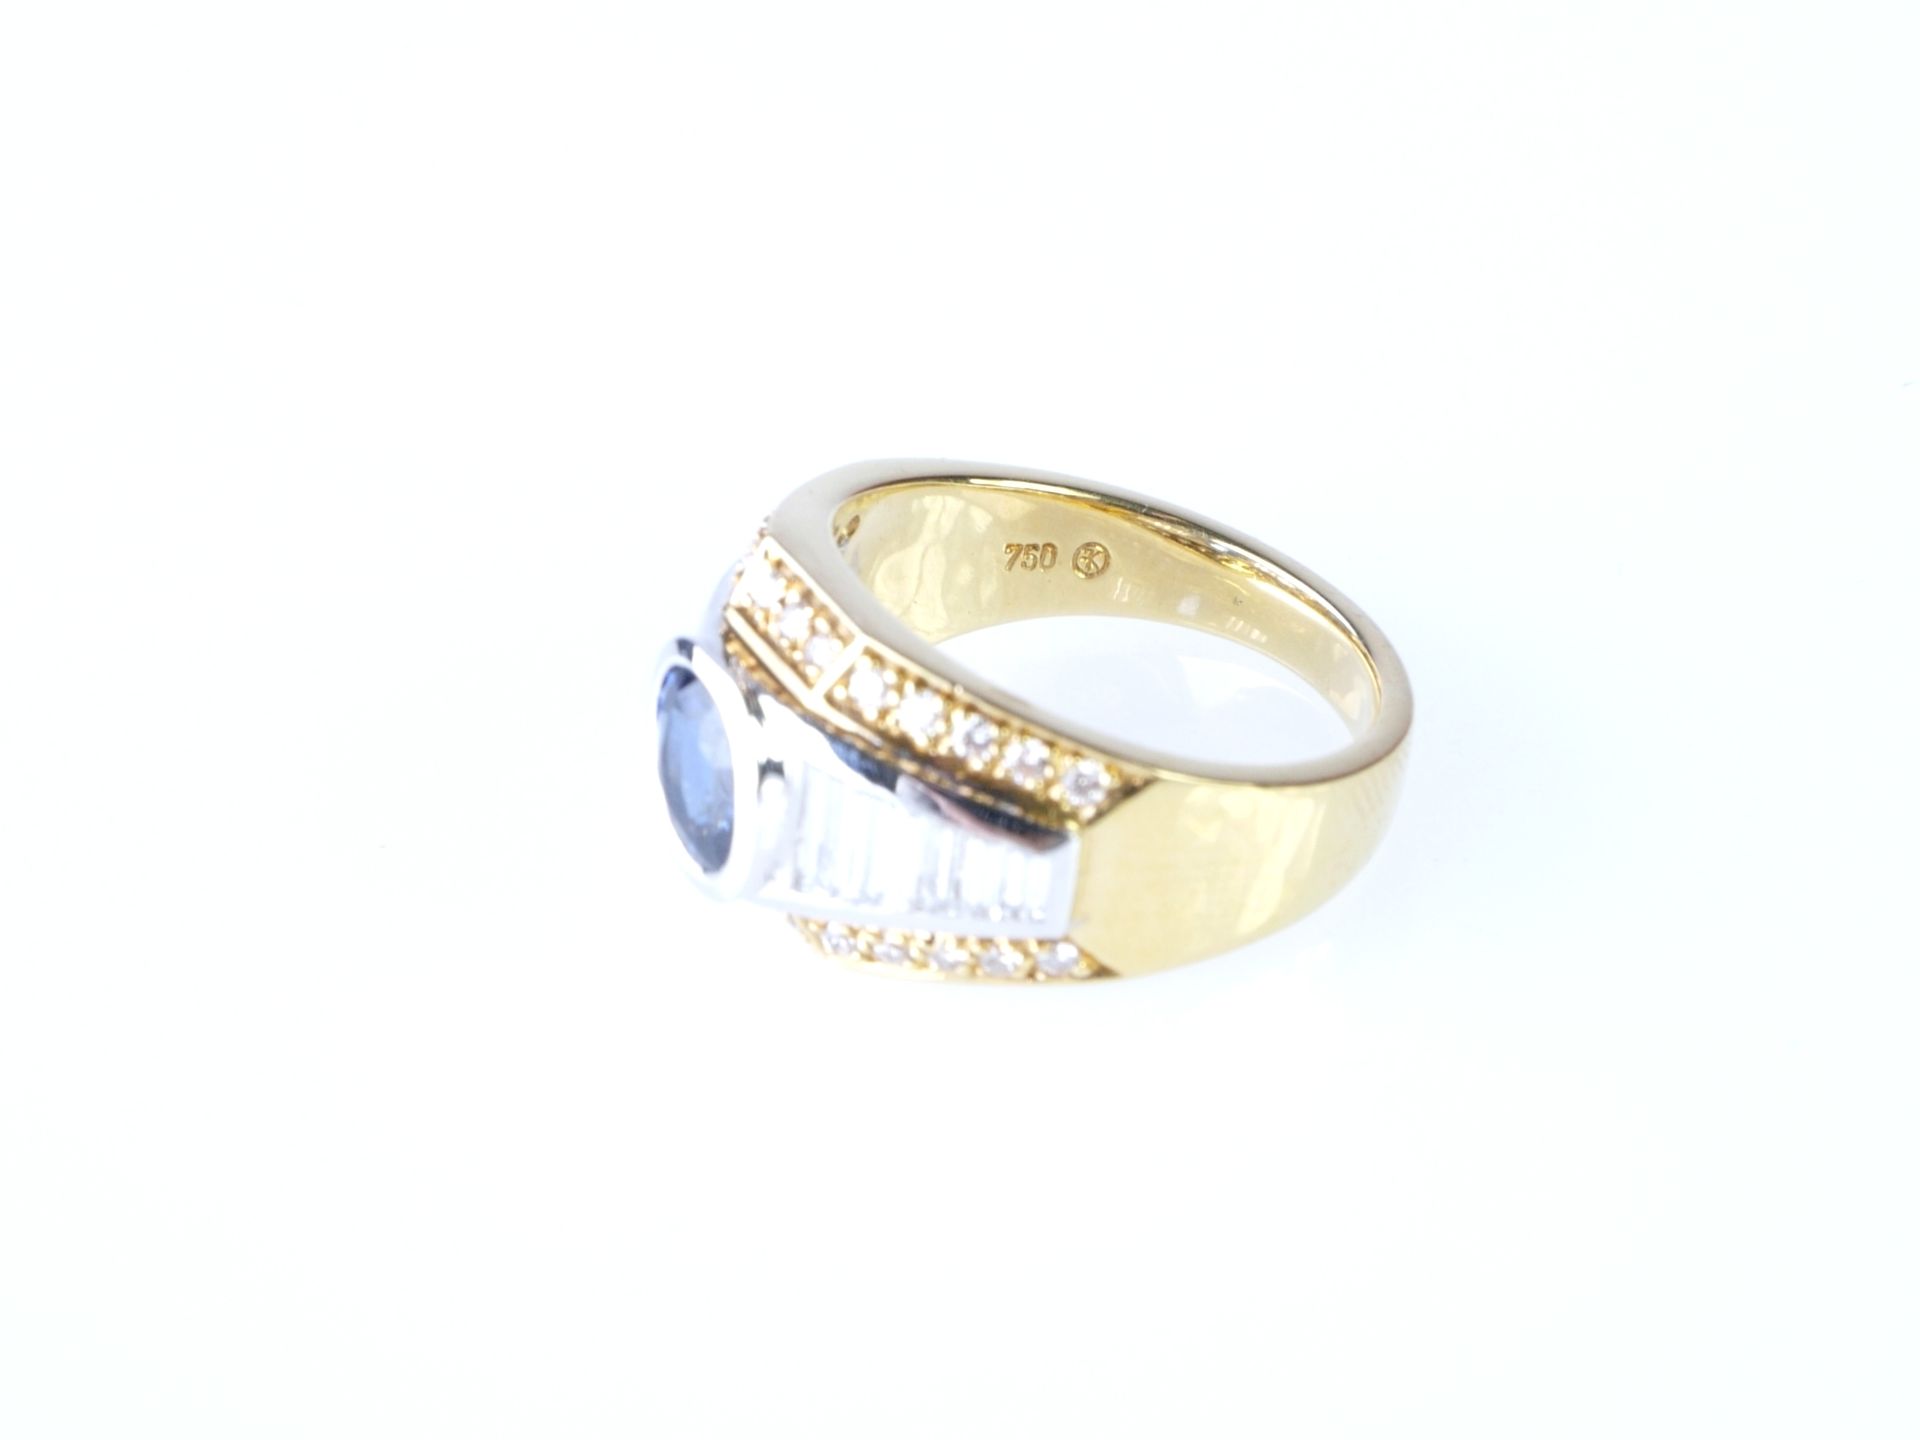 Schott Saphir Ring in Bicolor WG/GG 750 mit Diamanten und Brillanten - Bild 5 aus 5